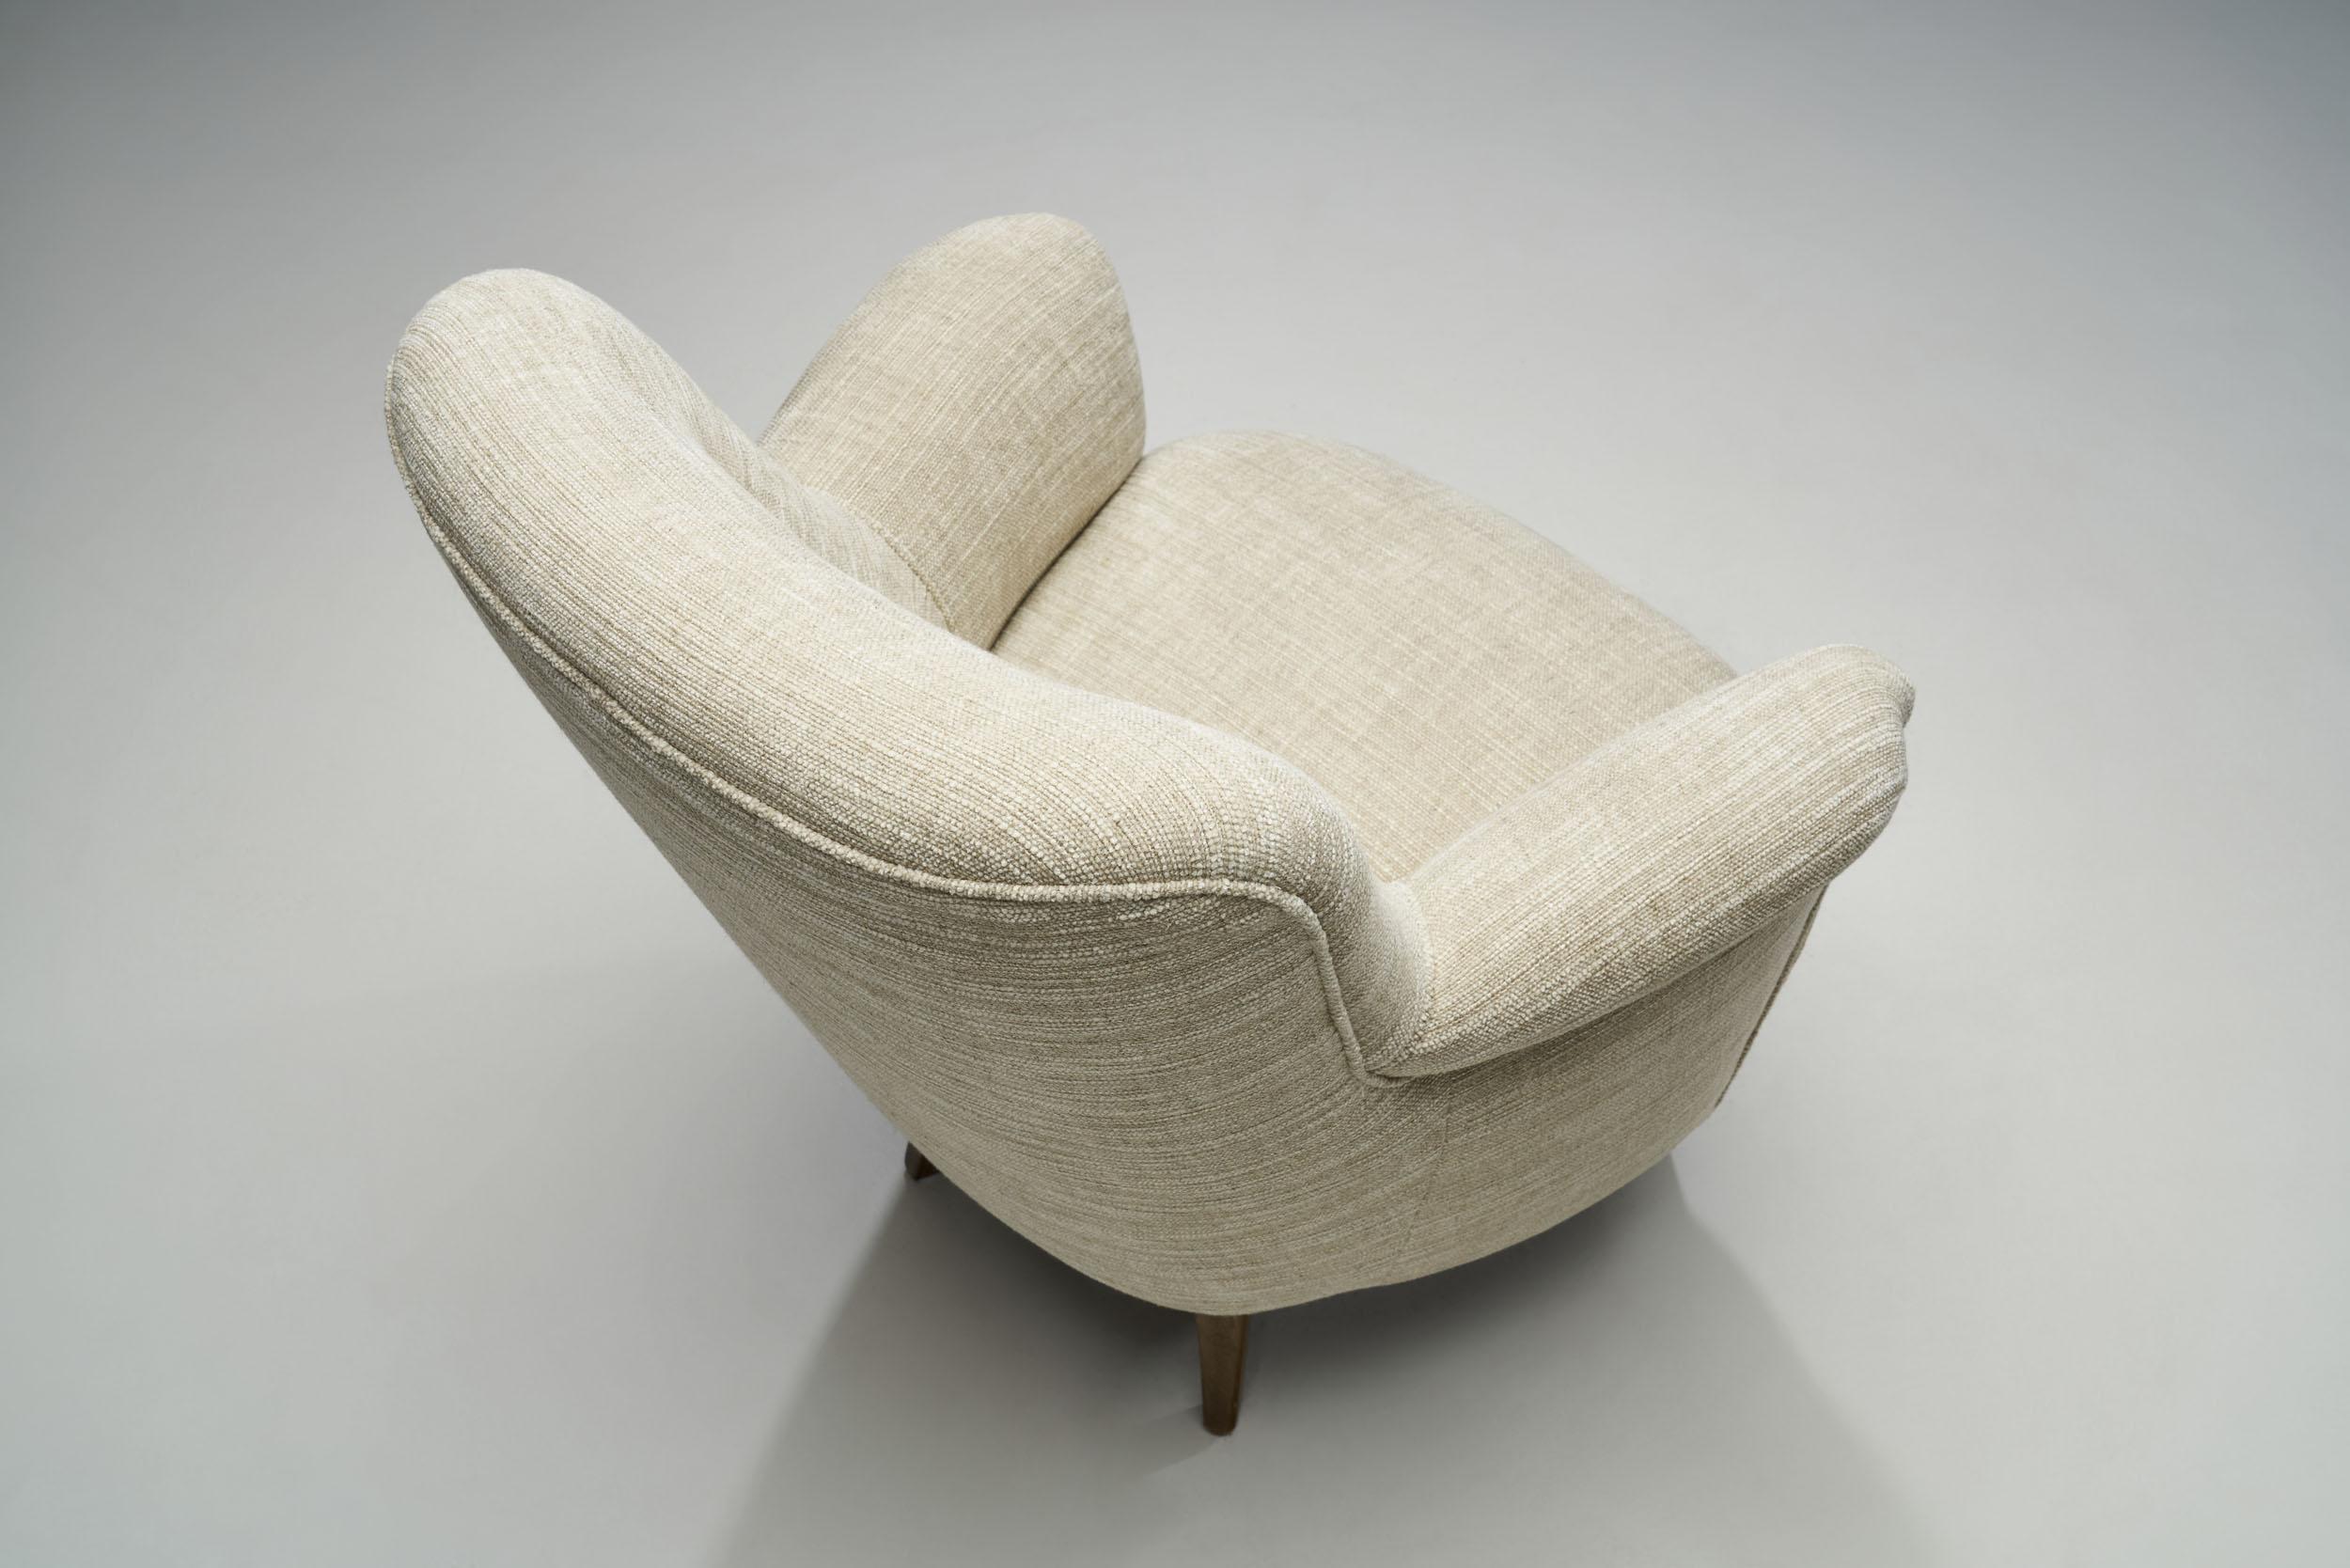 Mid-20th Century Carl Malmsten Upholstered Armchairs for O.H. Sjögren, Sweden, 1960s For Sale